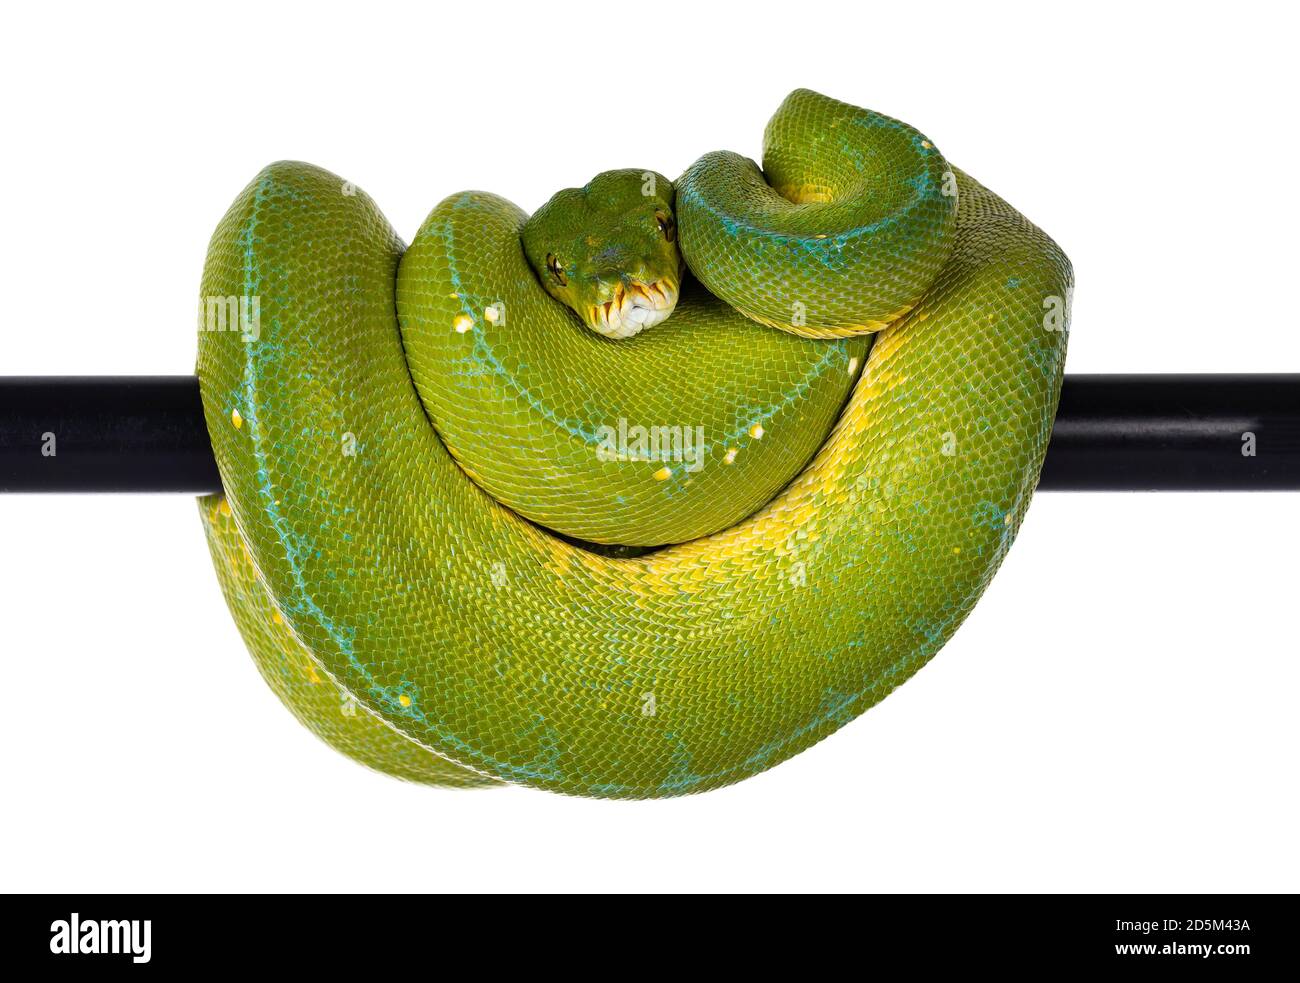 Adulte Green Tree Python aka Morelia viridis suspendu sur le poteau noir, pose typique avec la tête au milieu. Isolé sur fond blanc. Banque D'Images